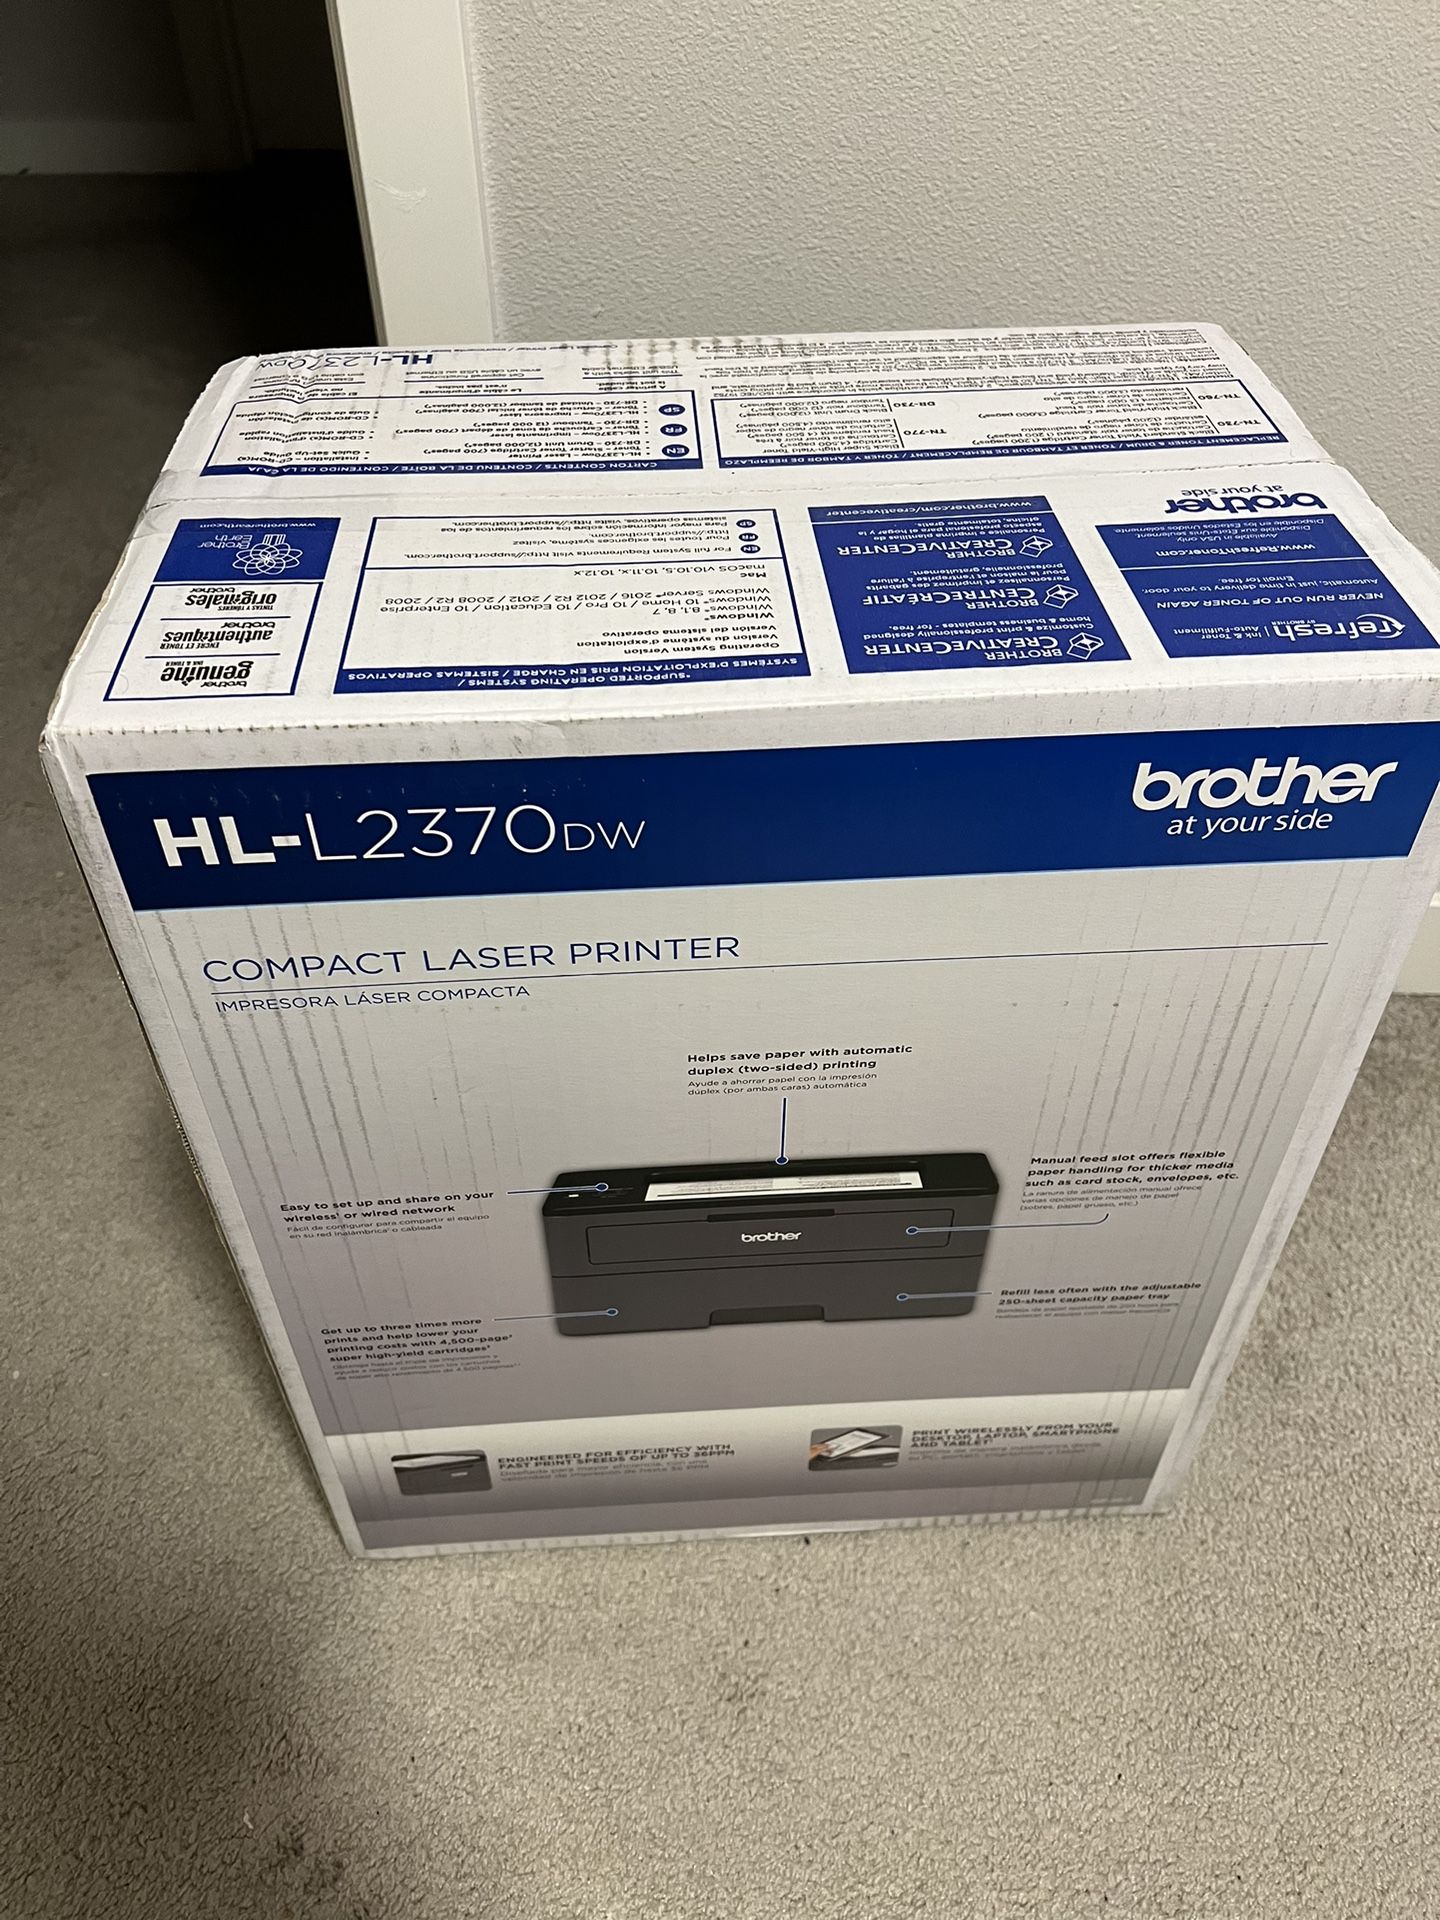 New Brother HL-2370DW Laser Printer